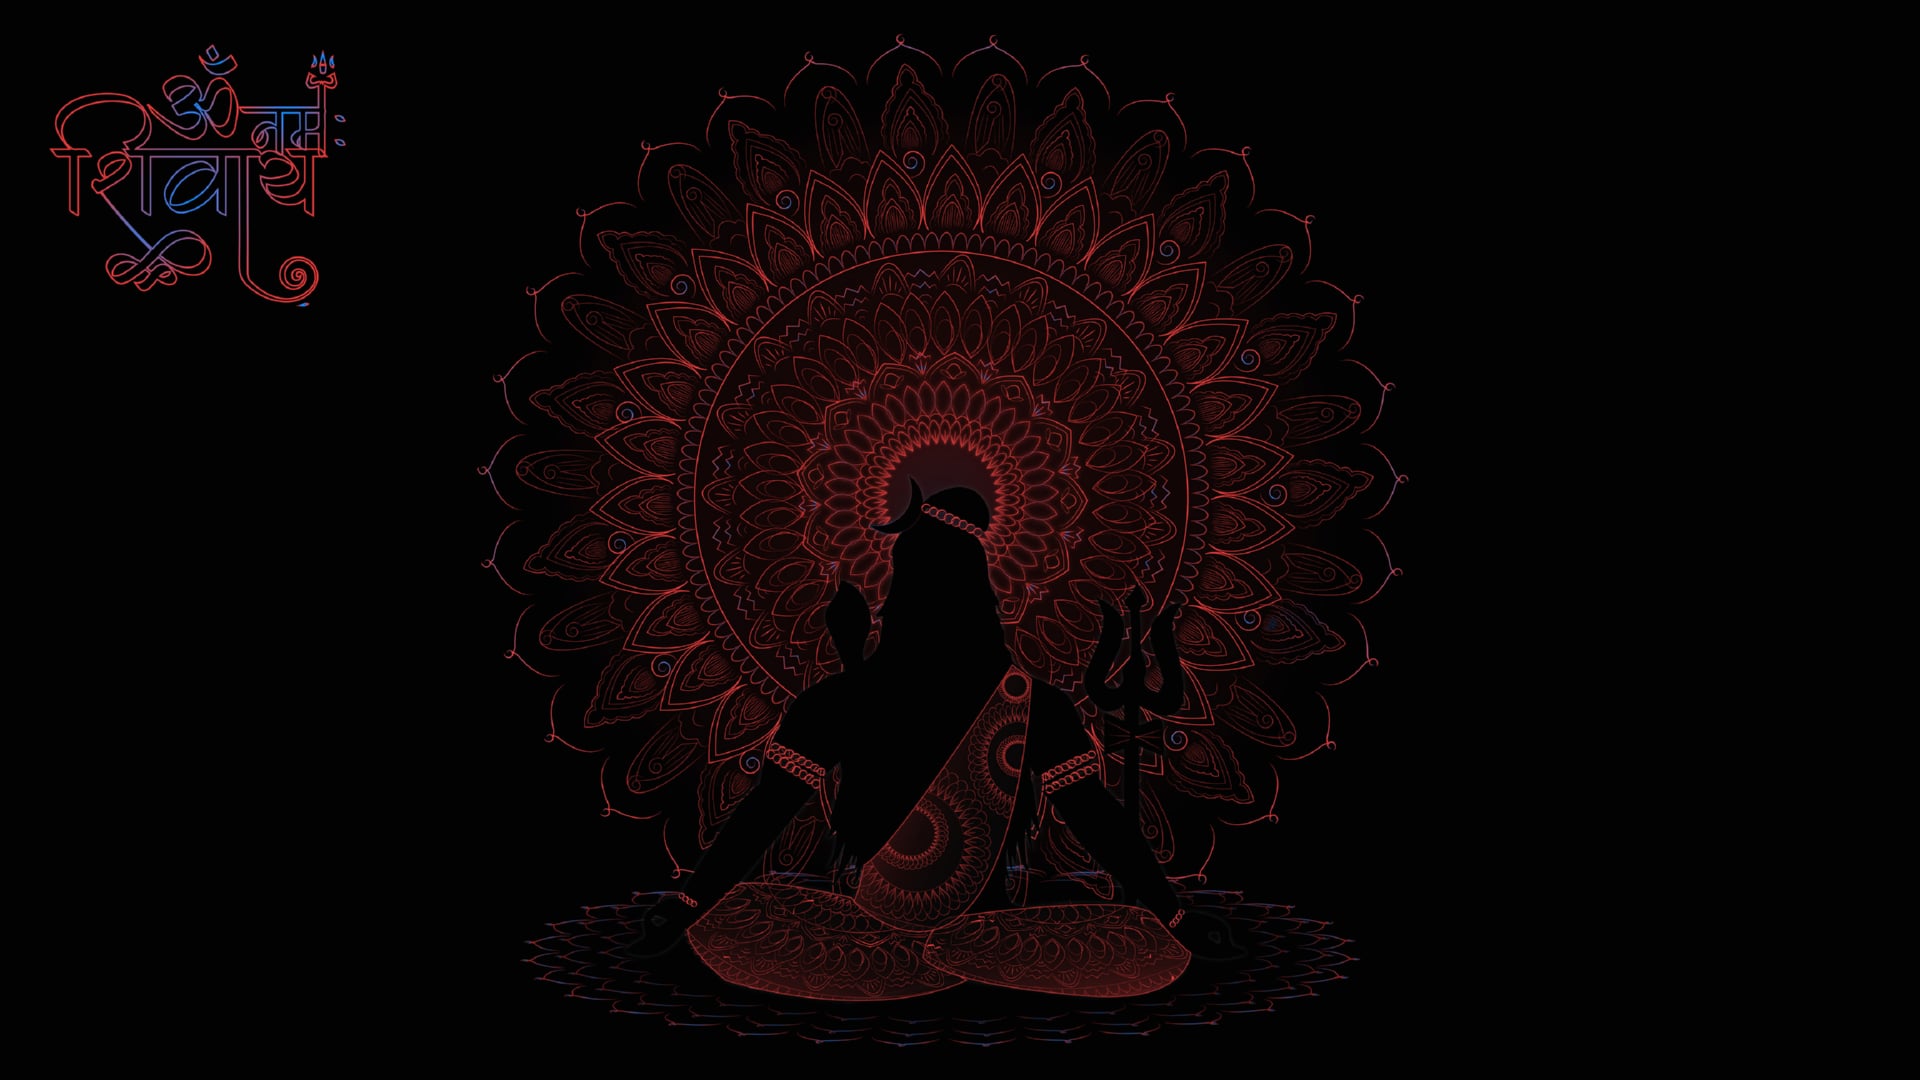 Digital Art Lord Shiva at 2048 x 2048 iPad size wallpapers HD quality